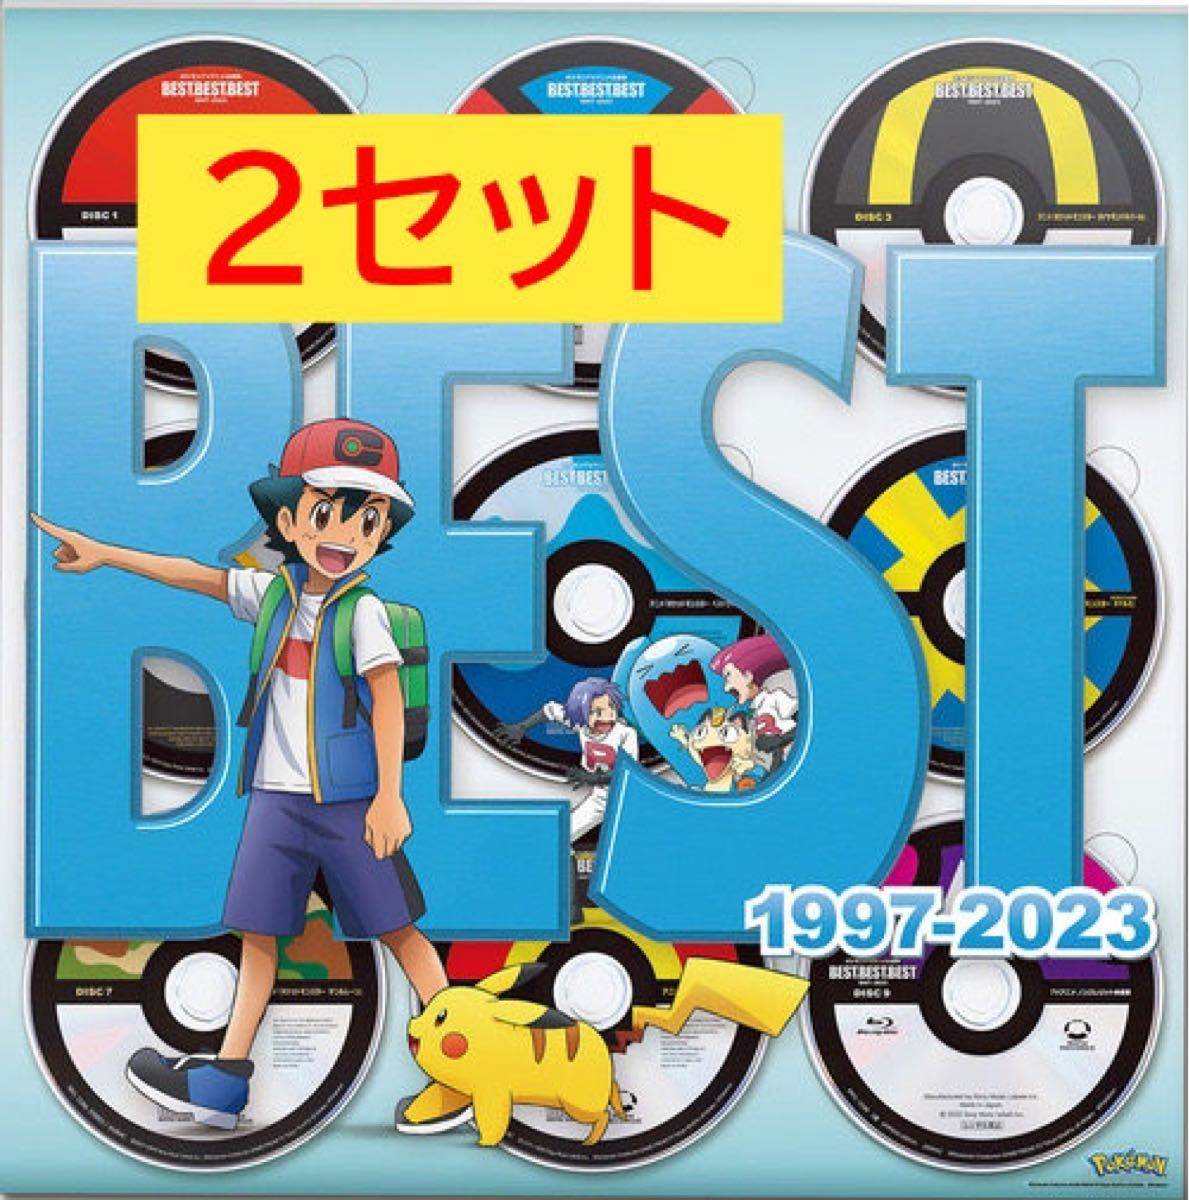 ポケモンTVアニメ主題歌 BEST OF BEST OF BEST 1997-2023 [8CD+Blu-ray/完全生産限定盤]